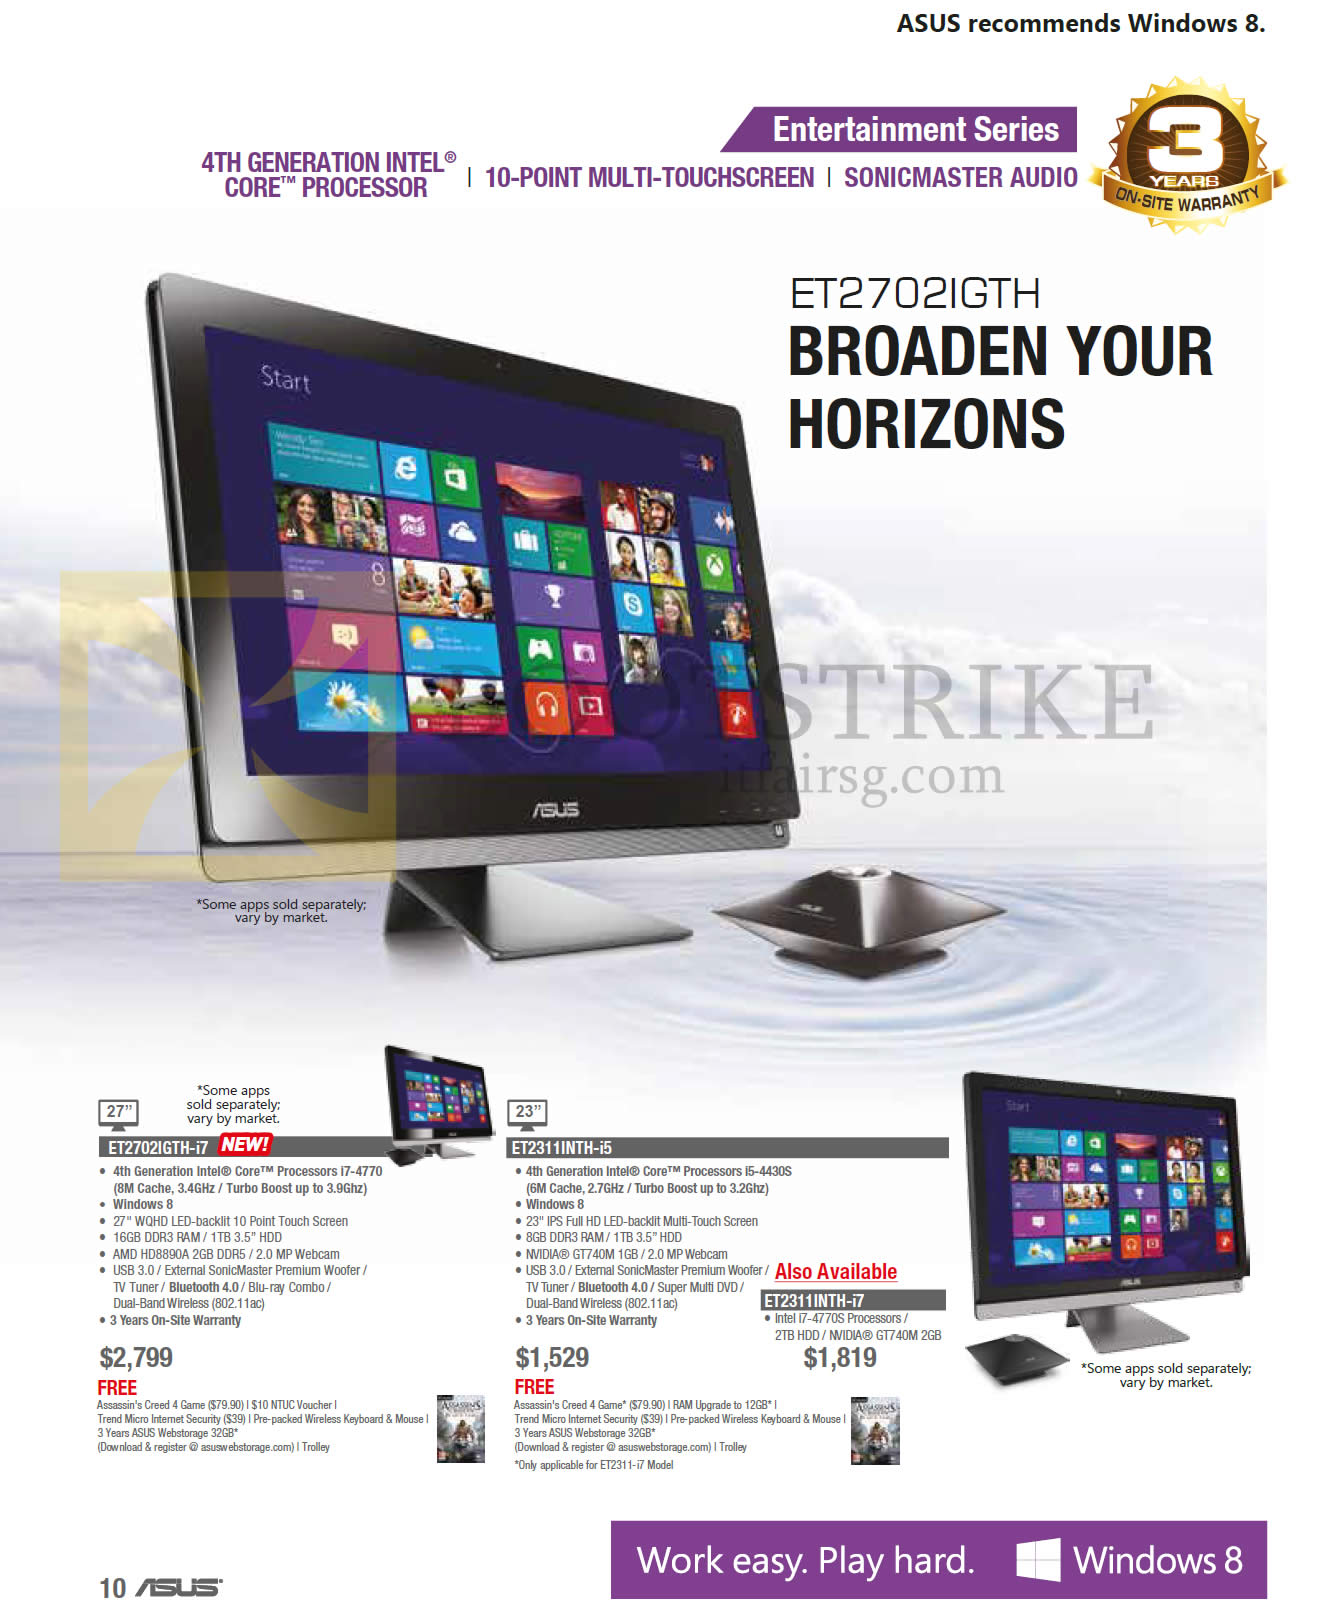 SITEX 2013 price list image brochure of ASUS AIO Desktop PCs ET2702IGTH, ET2311INTH, ET2311INTH